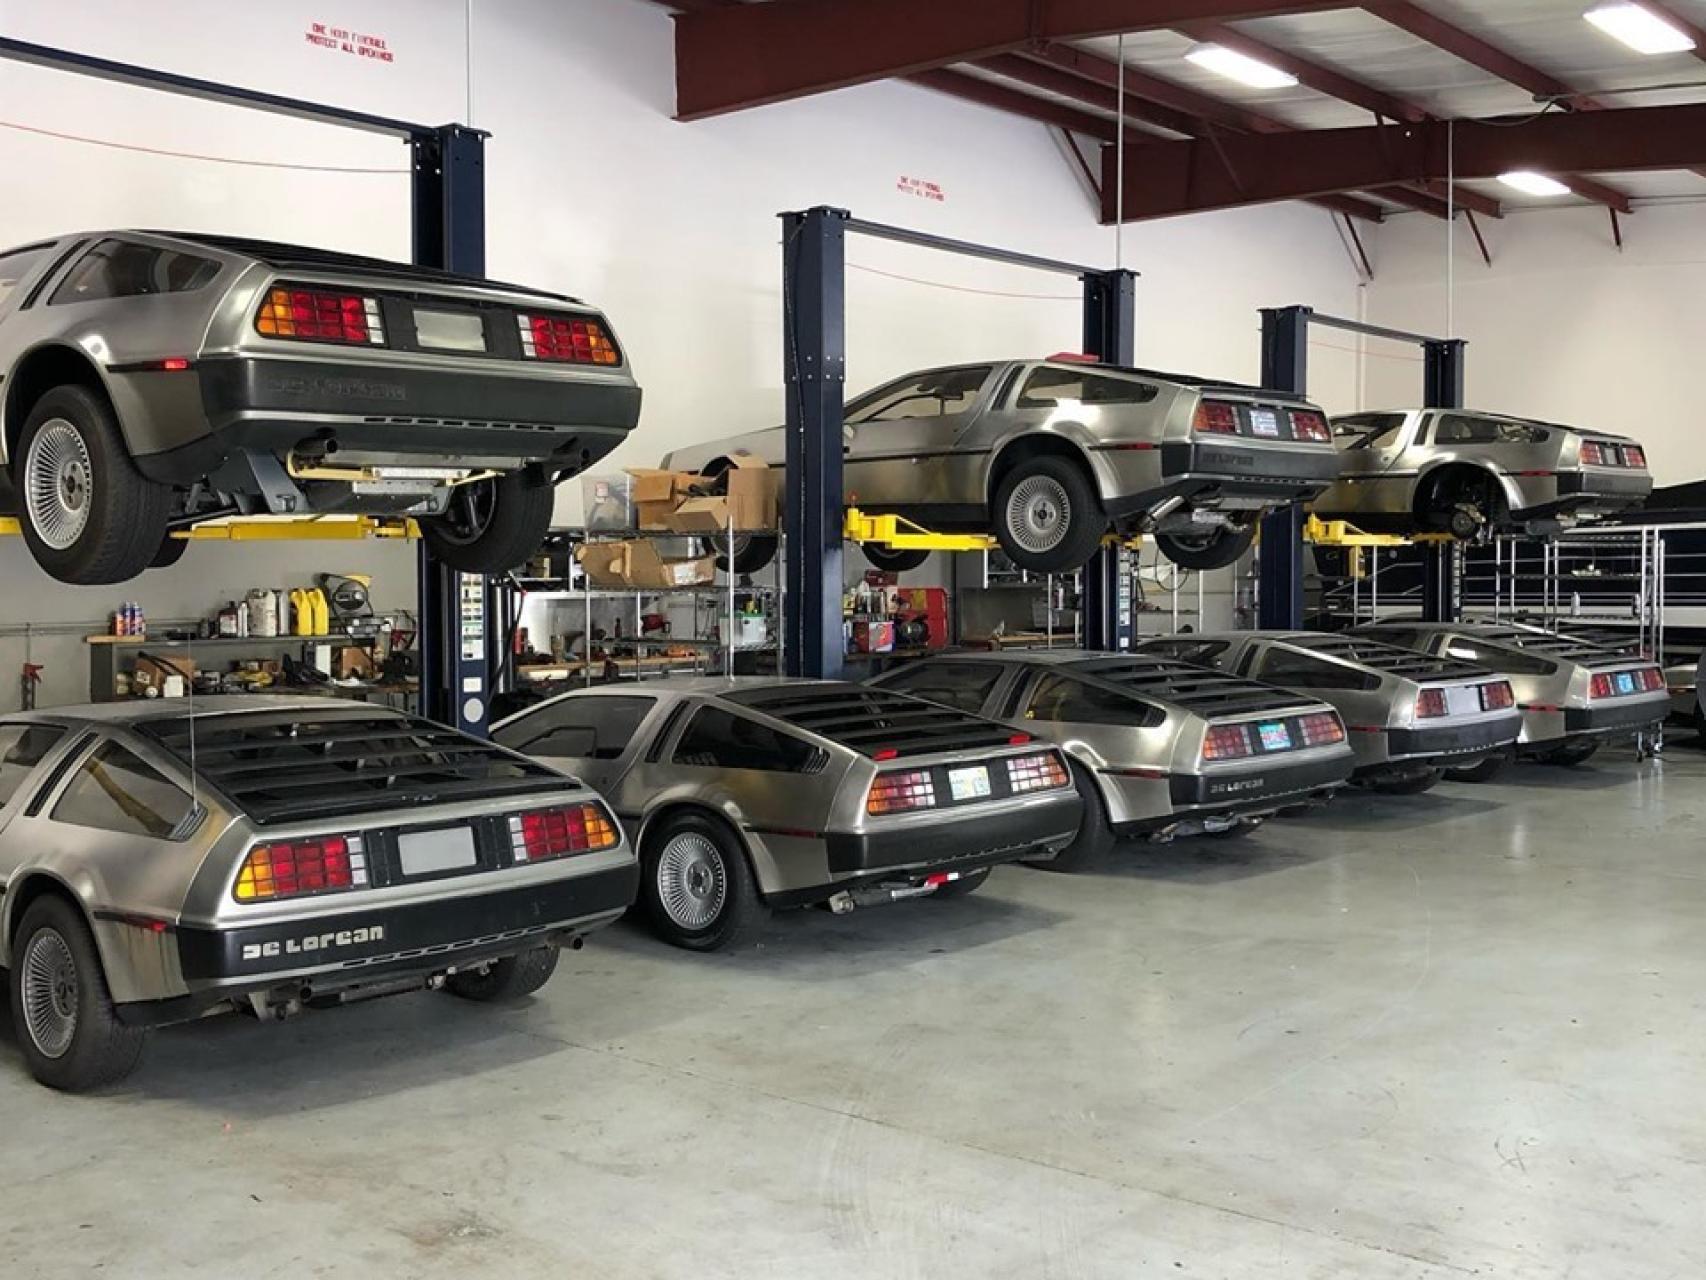 DeLorean aparcados en un garaje.